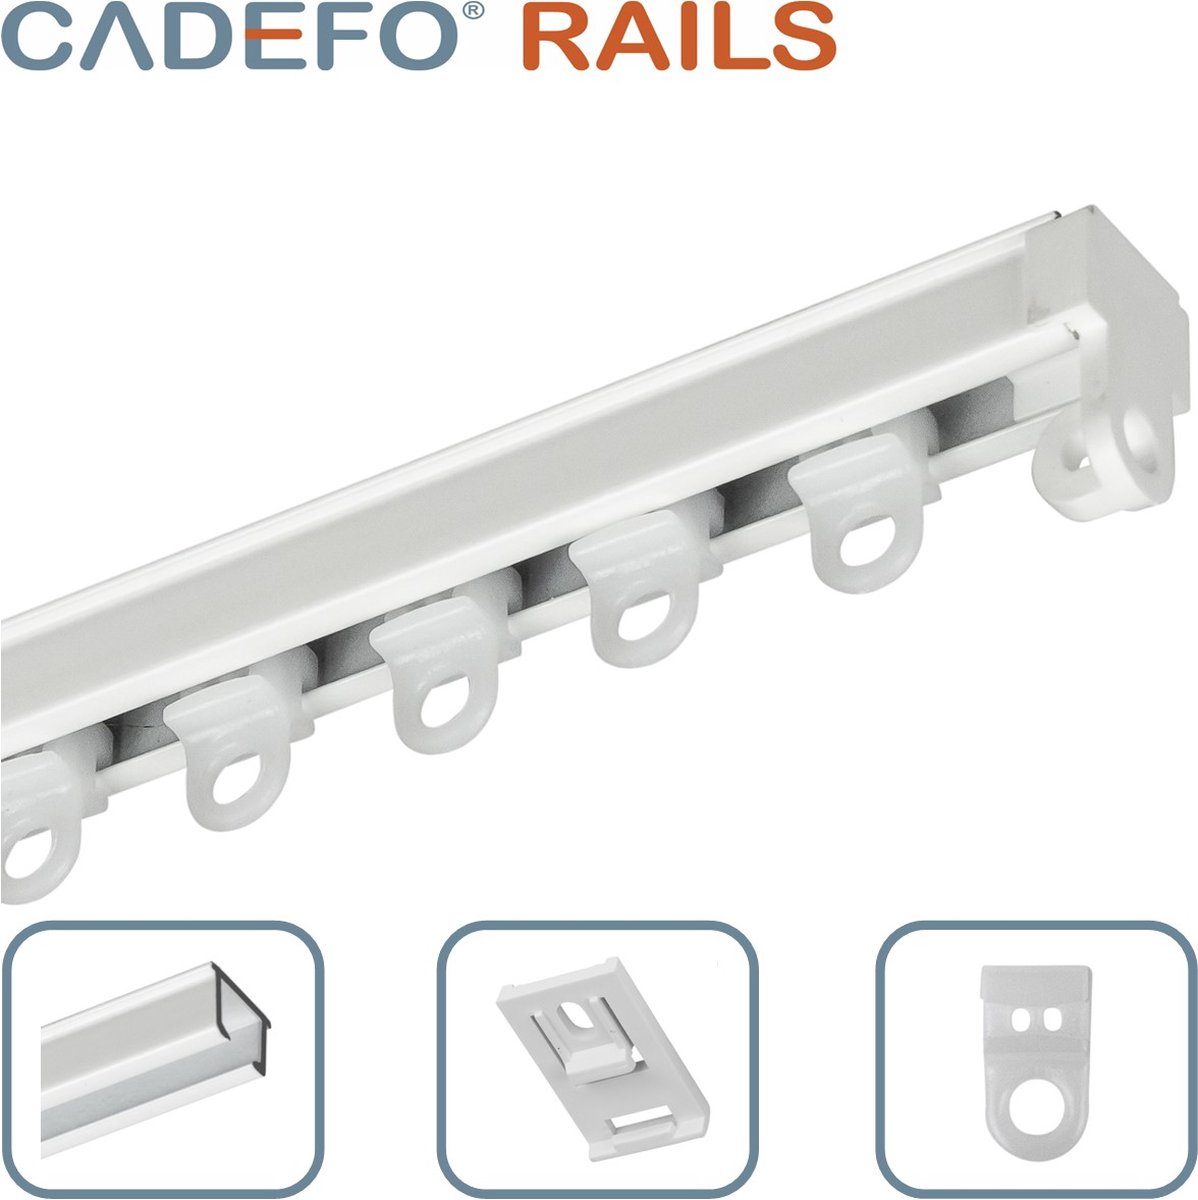 CADEFO RAILS (151 - 200 cm) Gordijnrails - Compleet op maat! - UIT 1 STUK - Leverbaar tot 6 meter - Plafondbevestiging - Lengte 154 cm